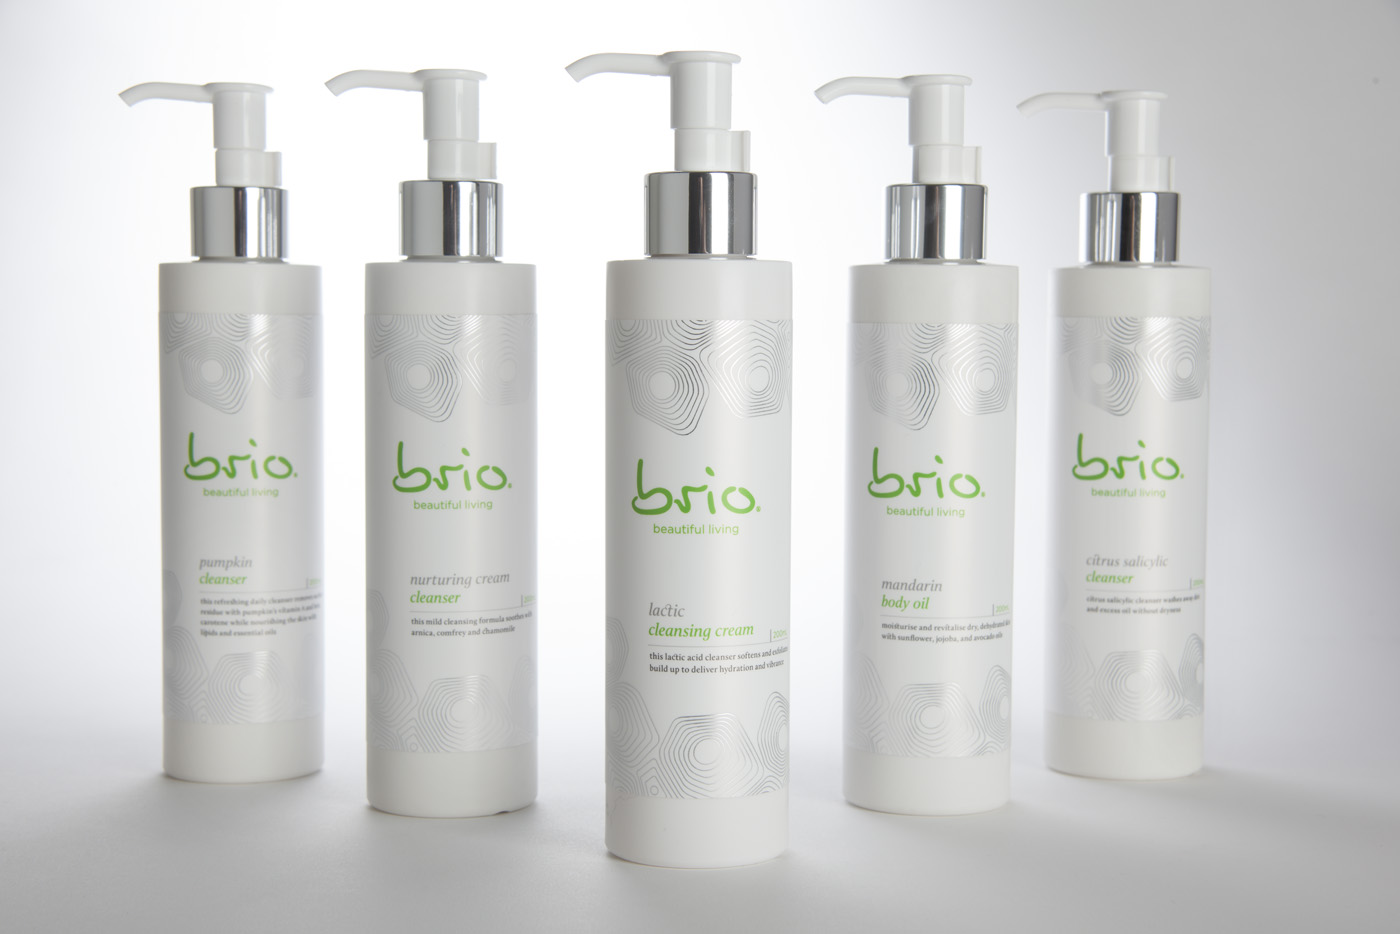 Brio Skincare Packaging Design